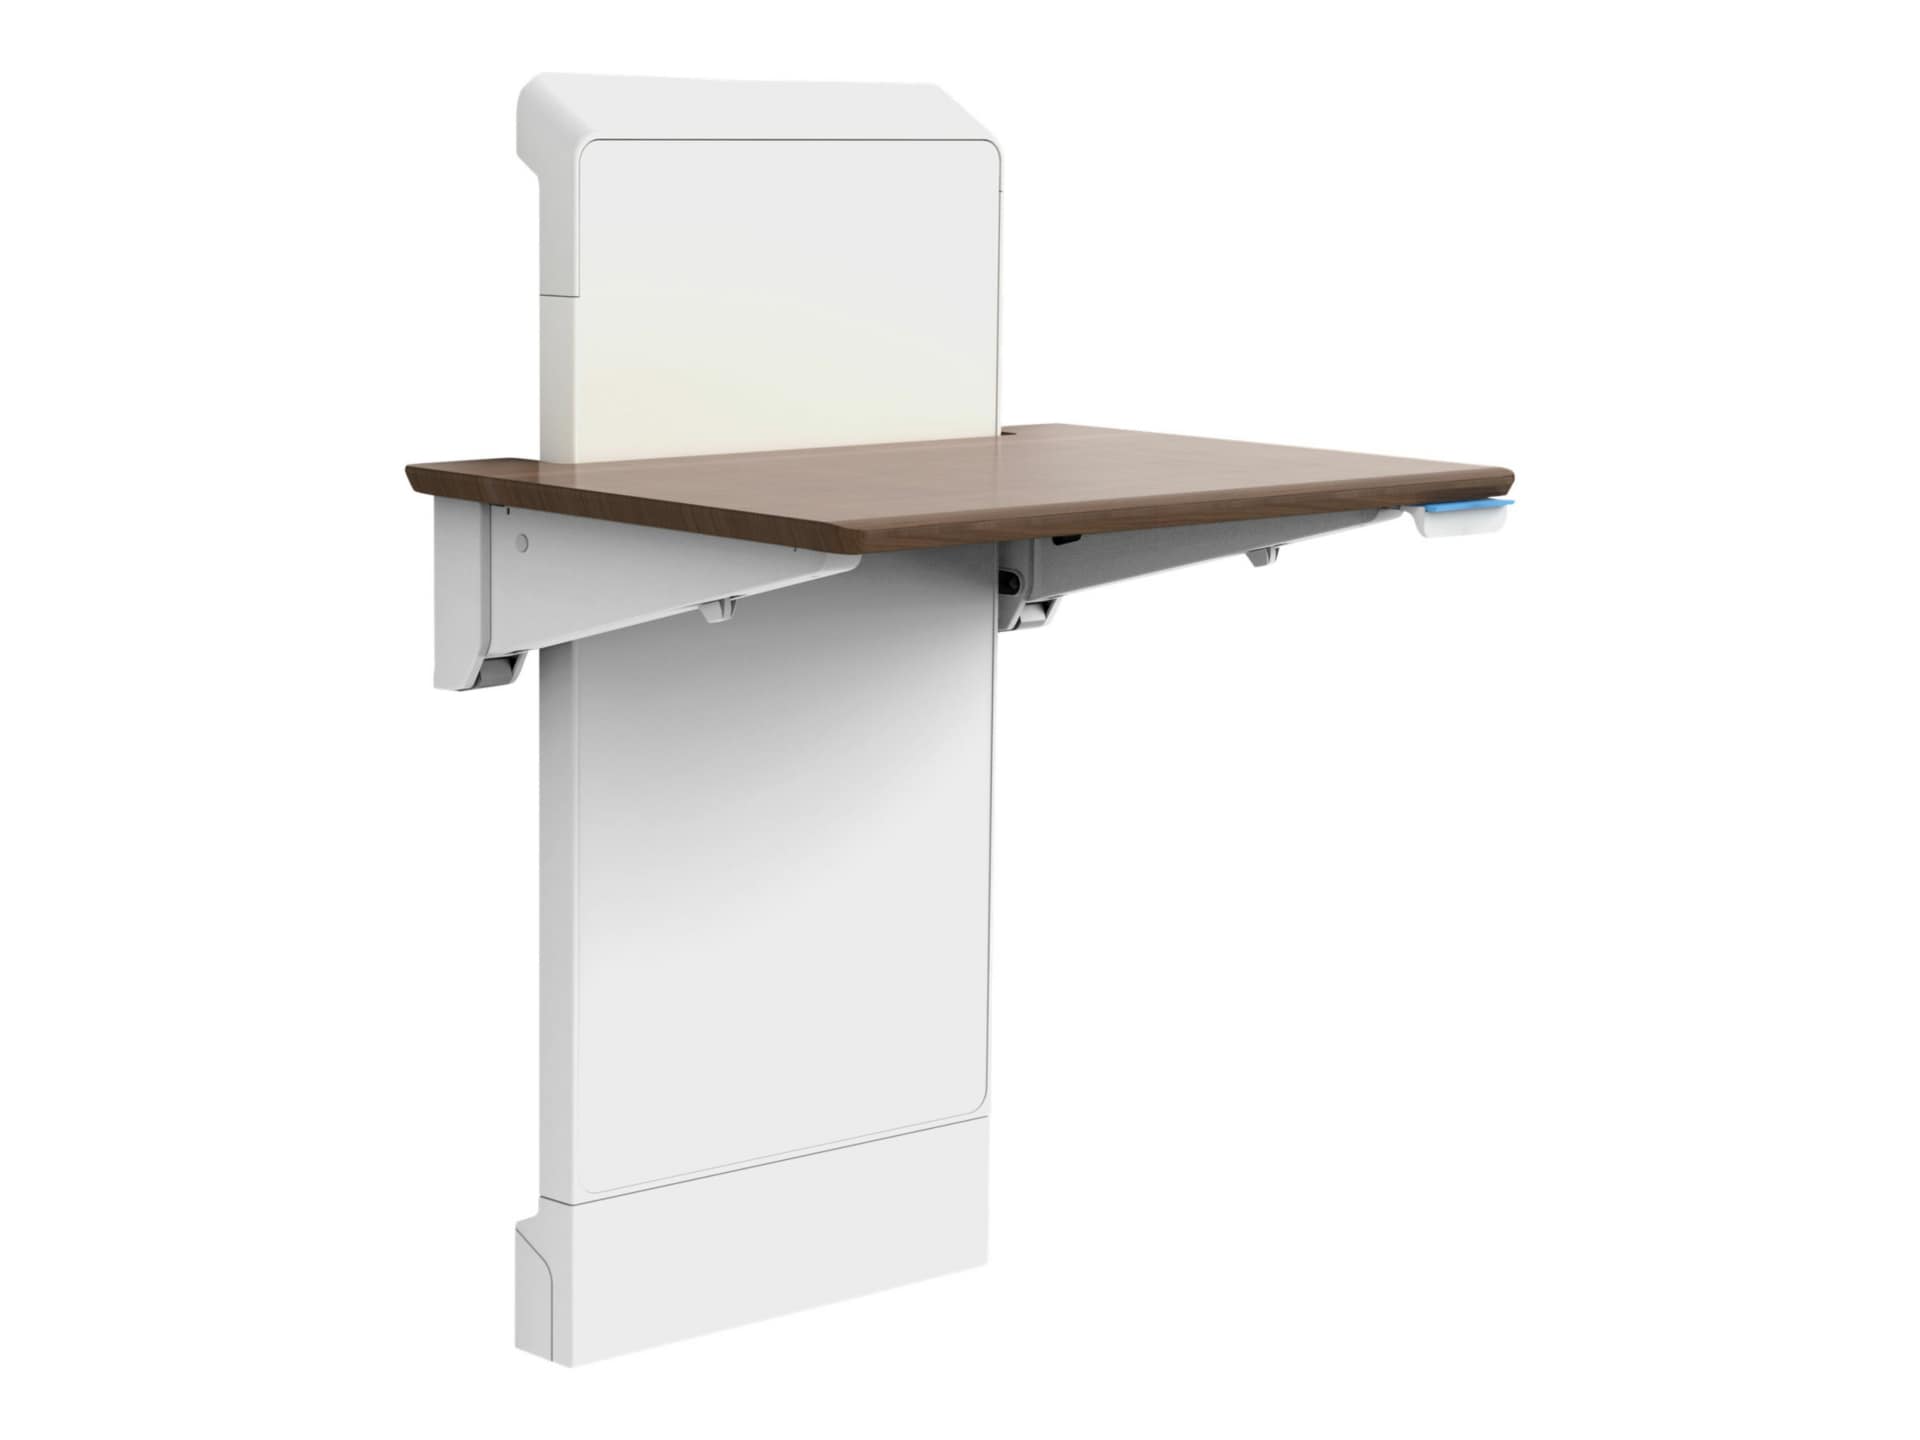 Ergotron WorkFit Elevate Sit-Stand Wall Desk - Snow White/Walnut Hills